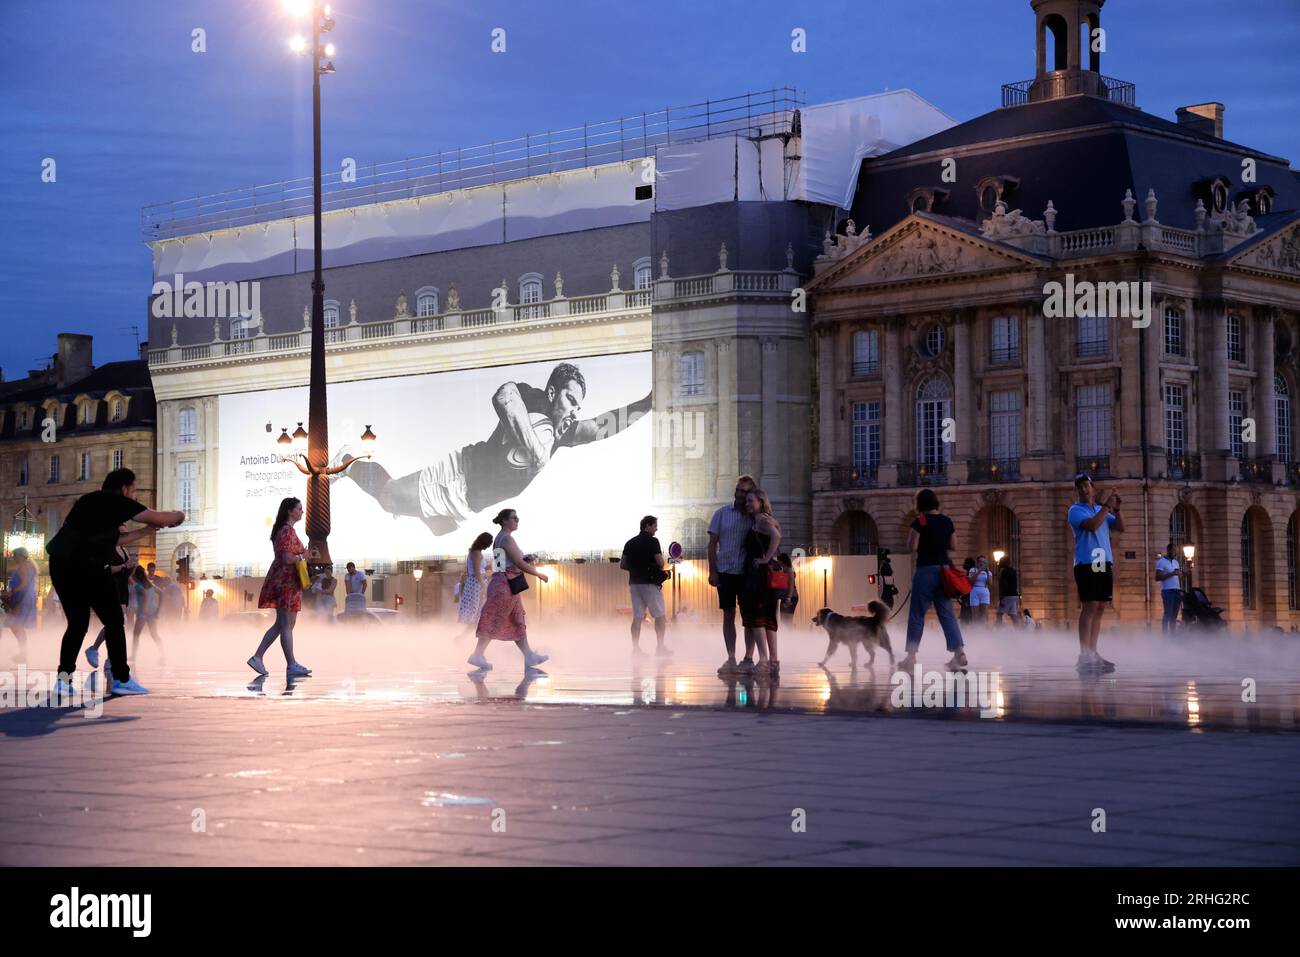 Fin de journée sur les quais de Bordeaux. Sur les bâtiments de la place de la bourse une photo d’Antoine Dupont de la campagne publicitaire Apple « Ph Stock Photo